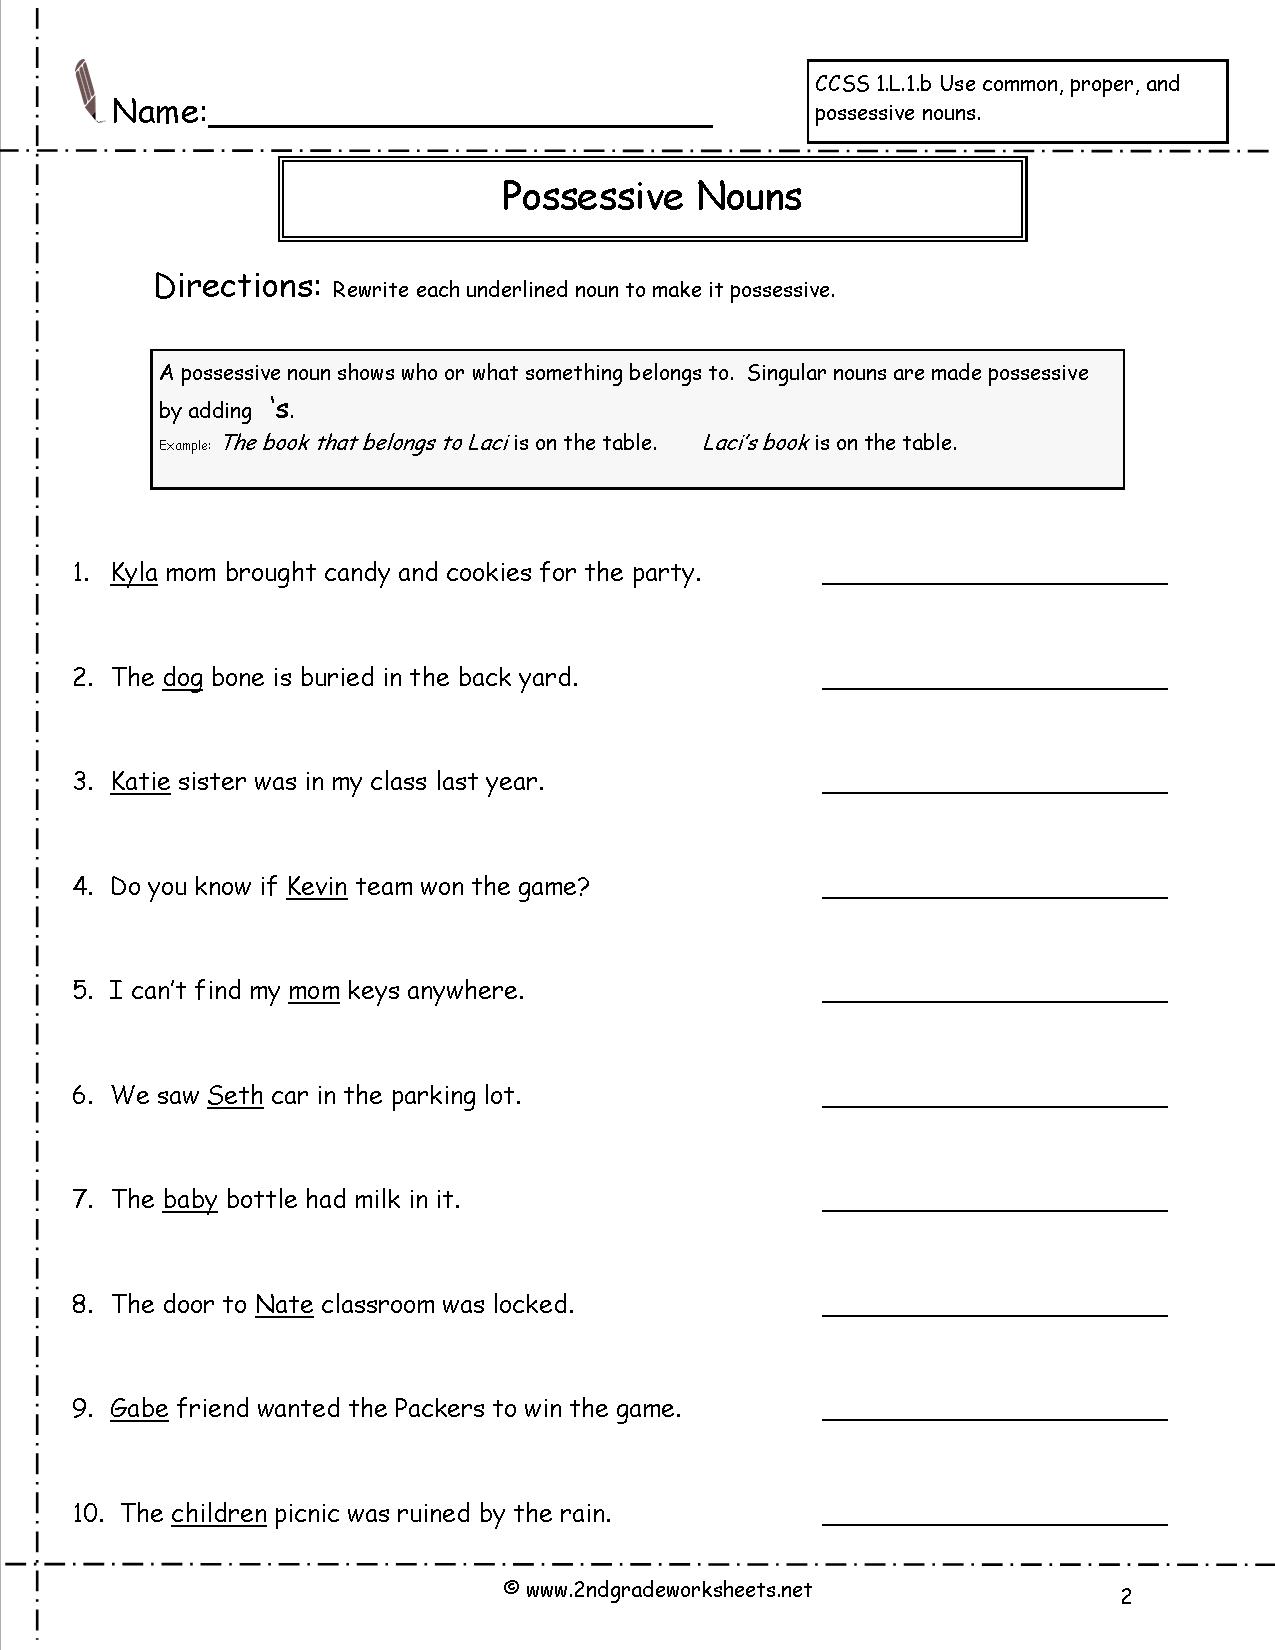 Worksheets On Possessive Nouns For Grade 7